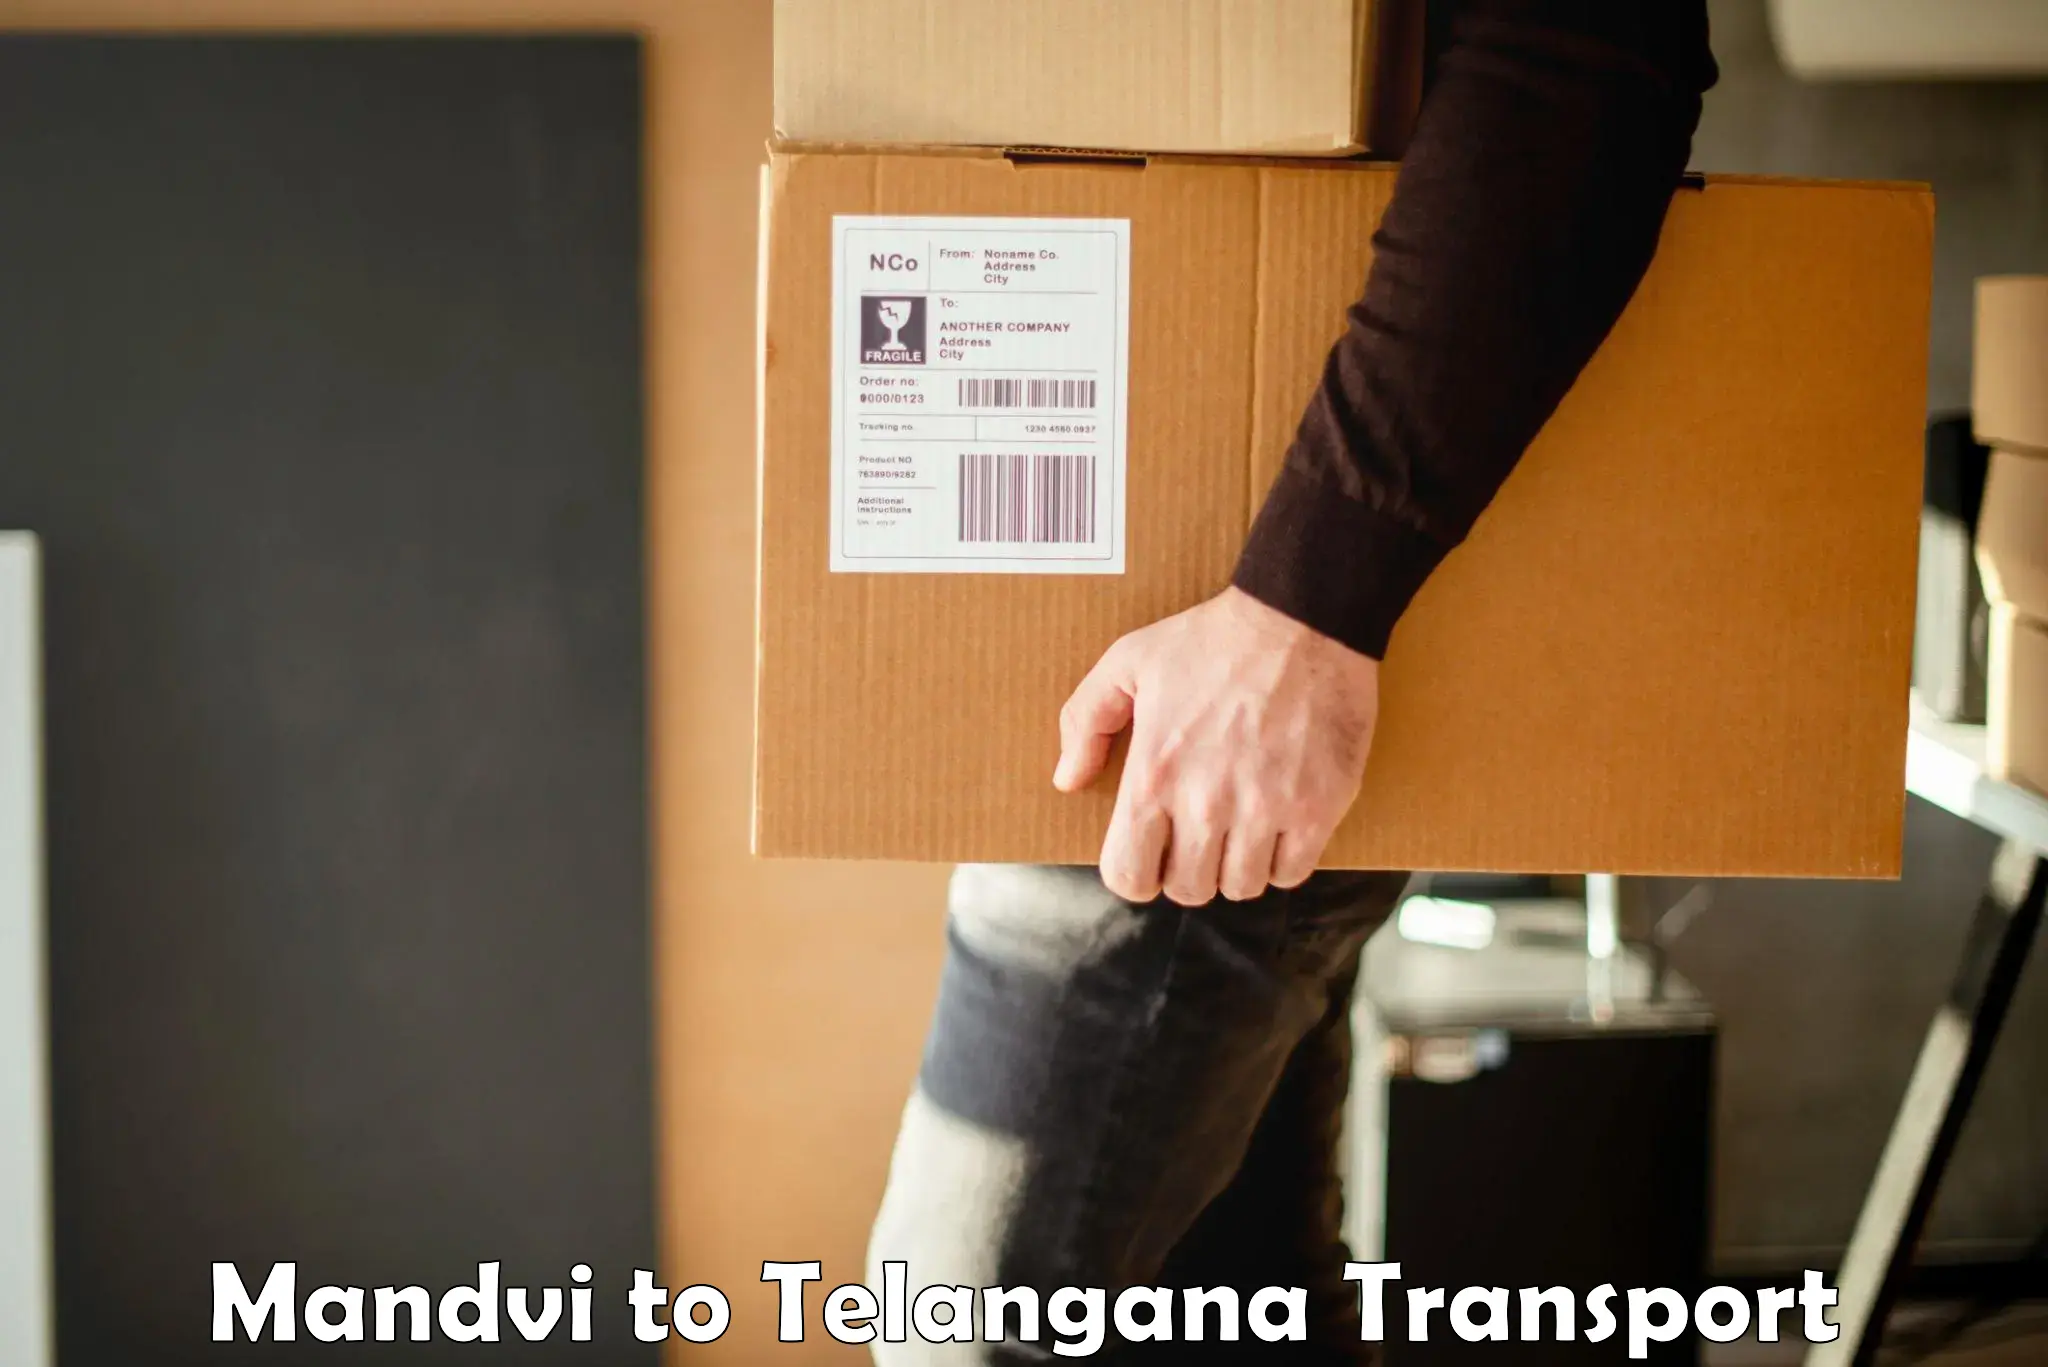 Container transport service Mandvi to Pregnapur